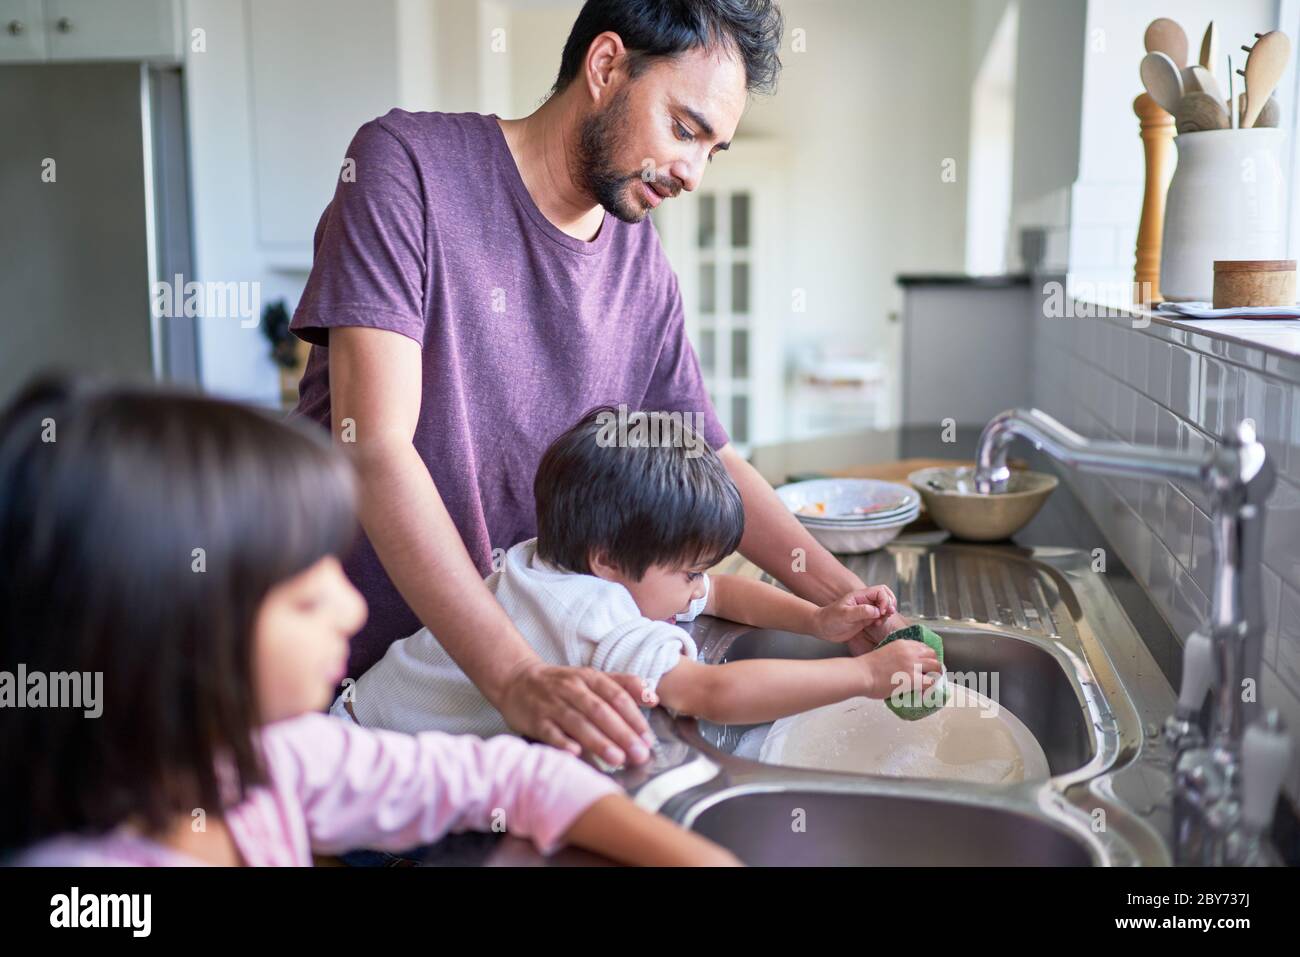 Vater und Kinder beim Abspülen in der Küchenspüle Stockfoto